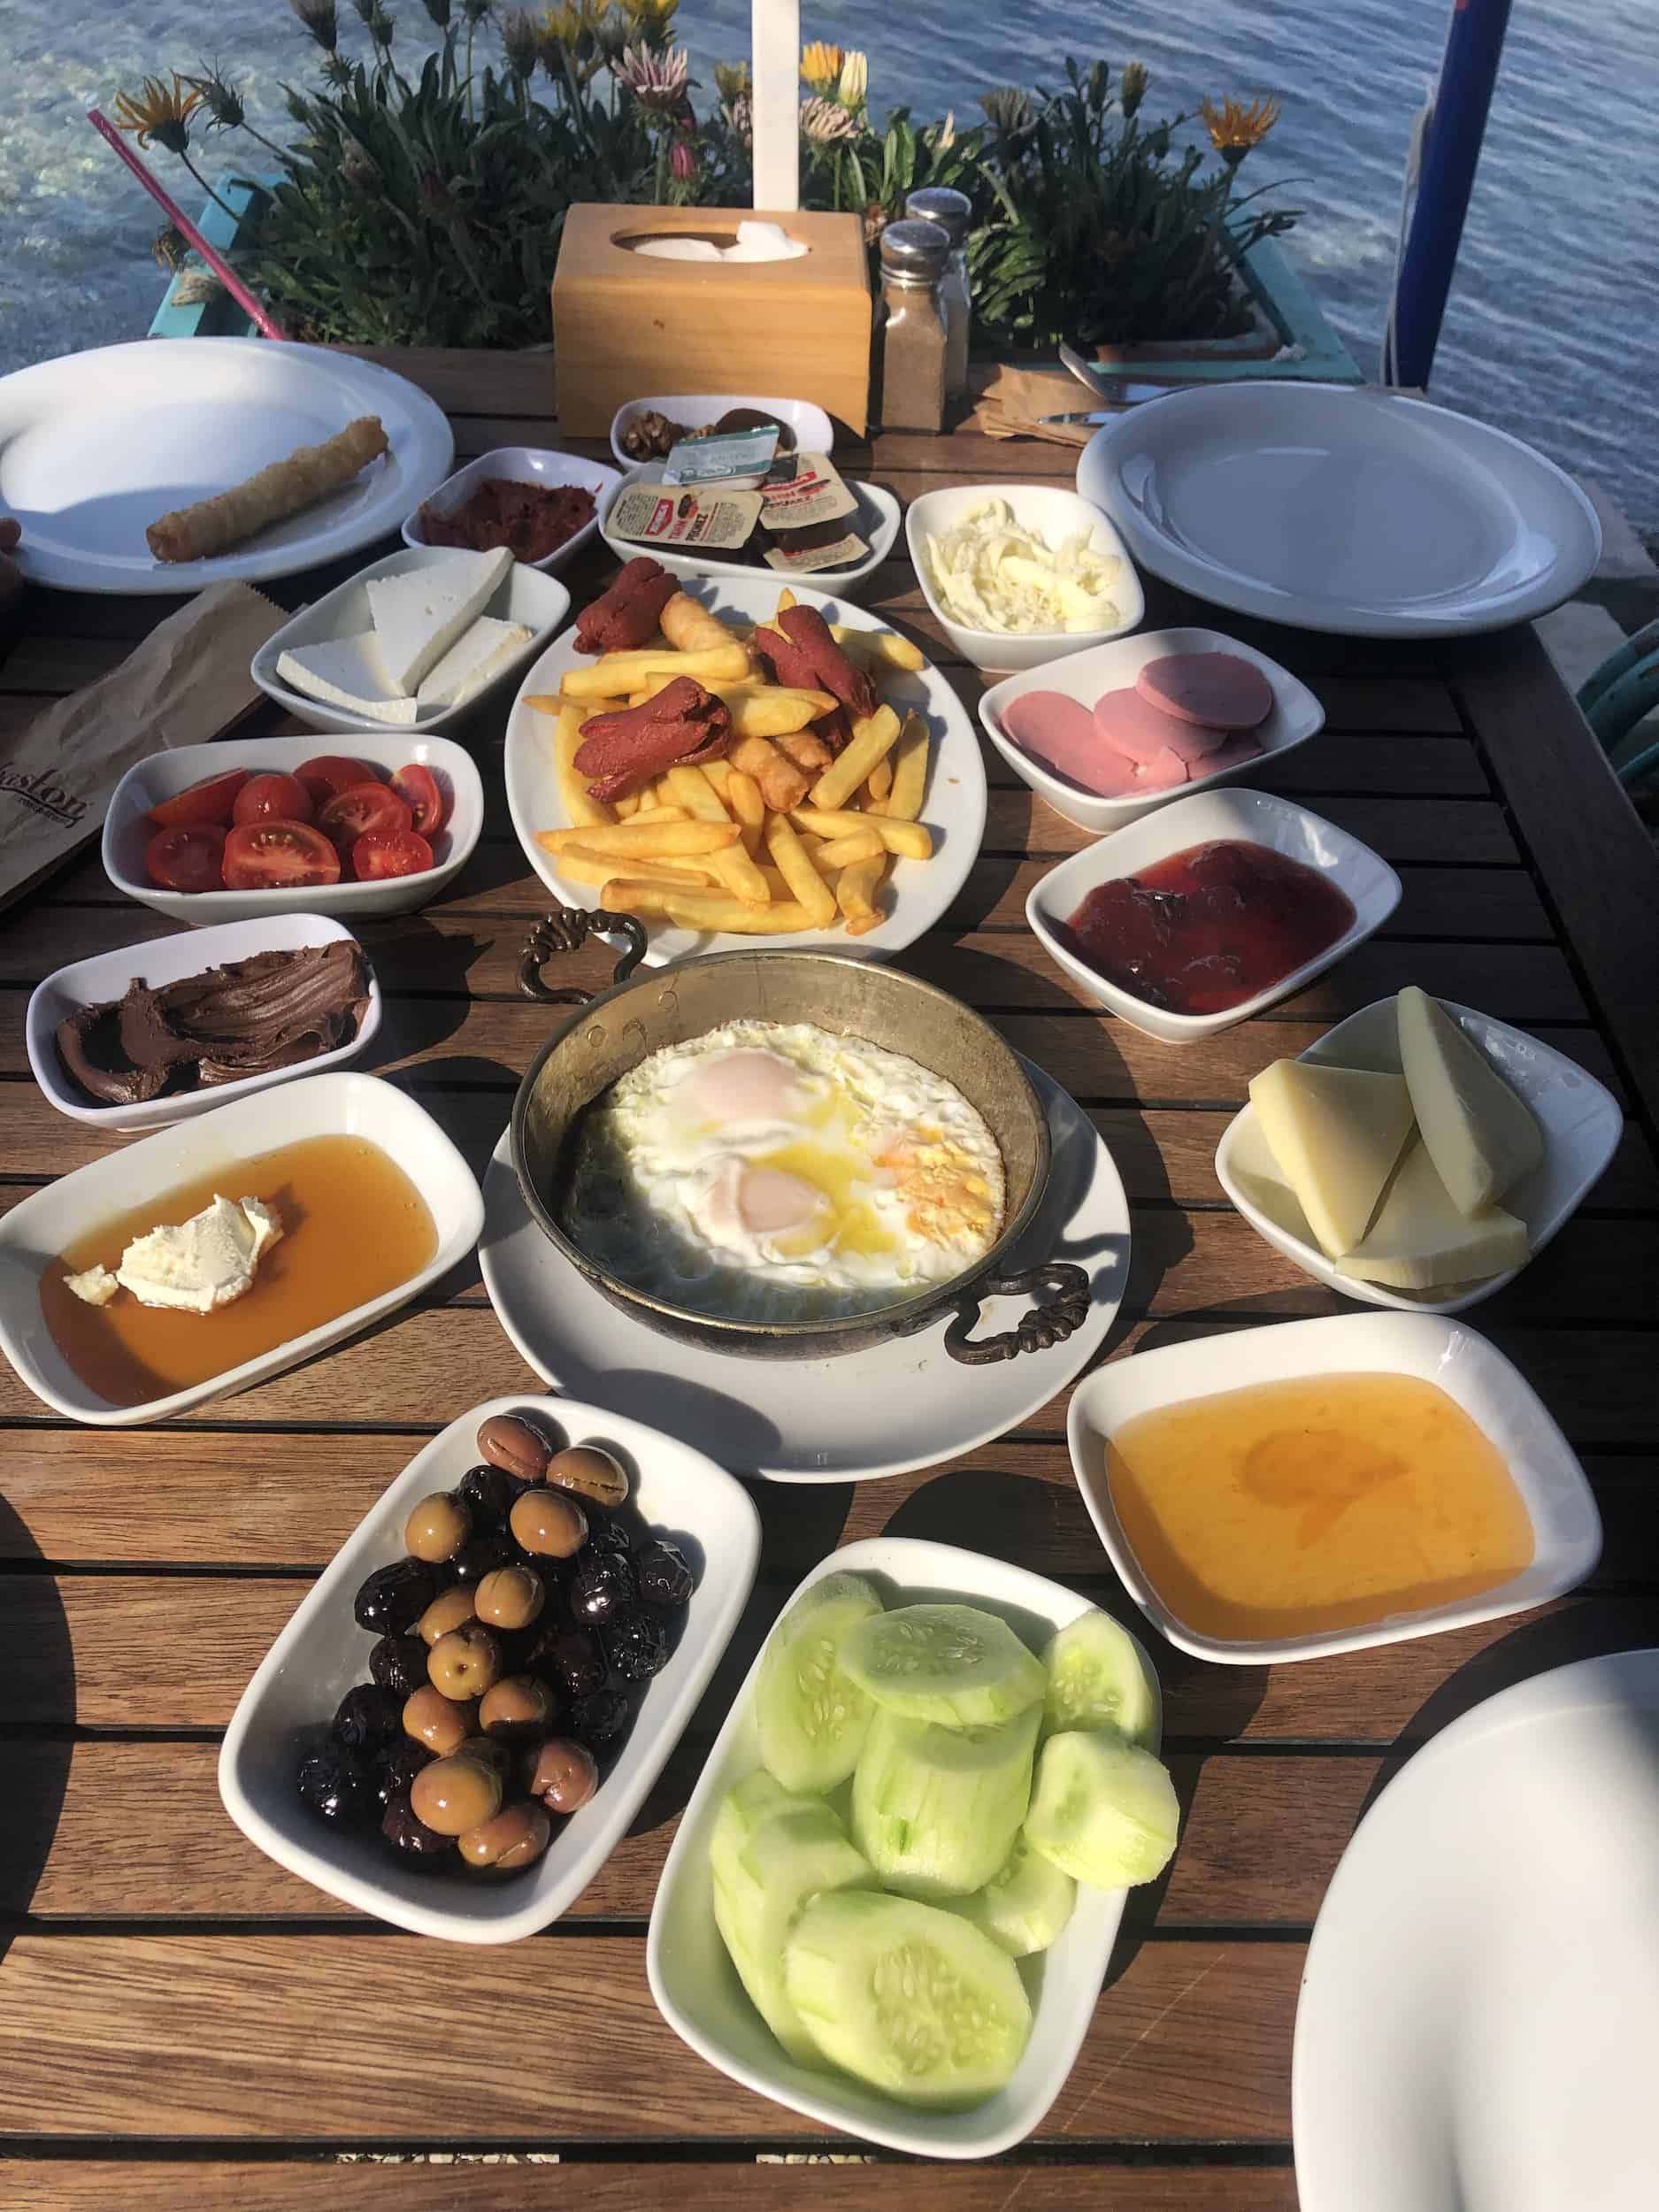 Turkish breakfast at Baston